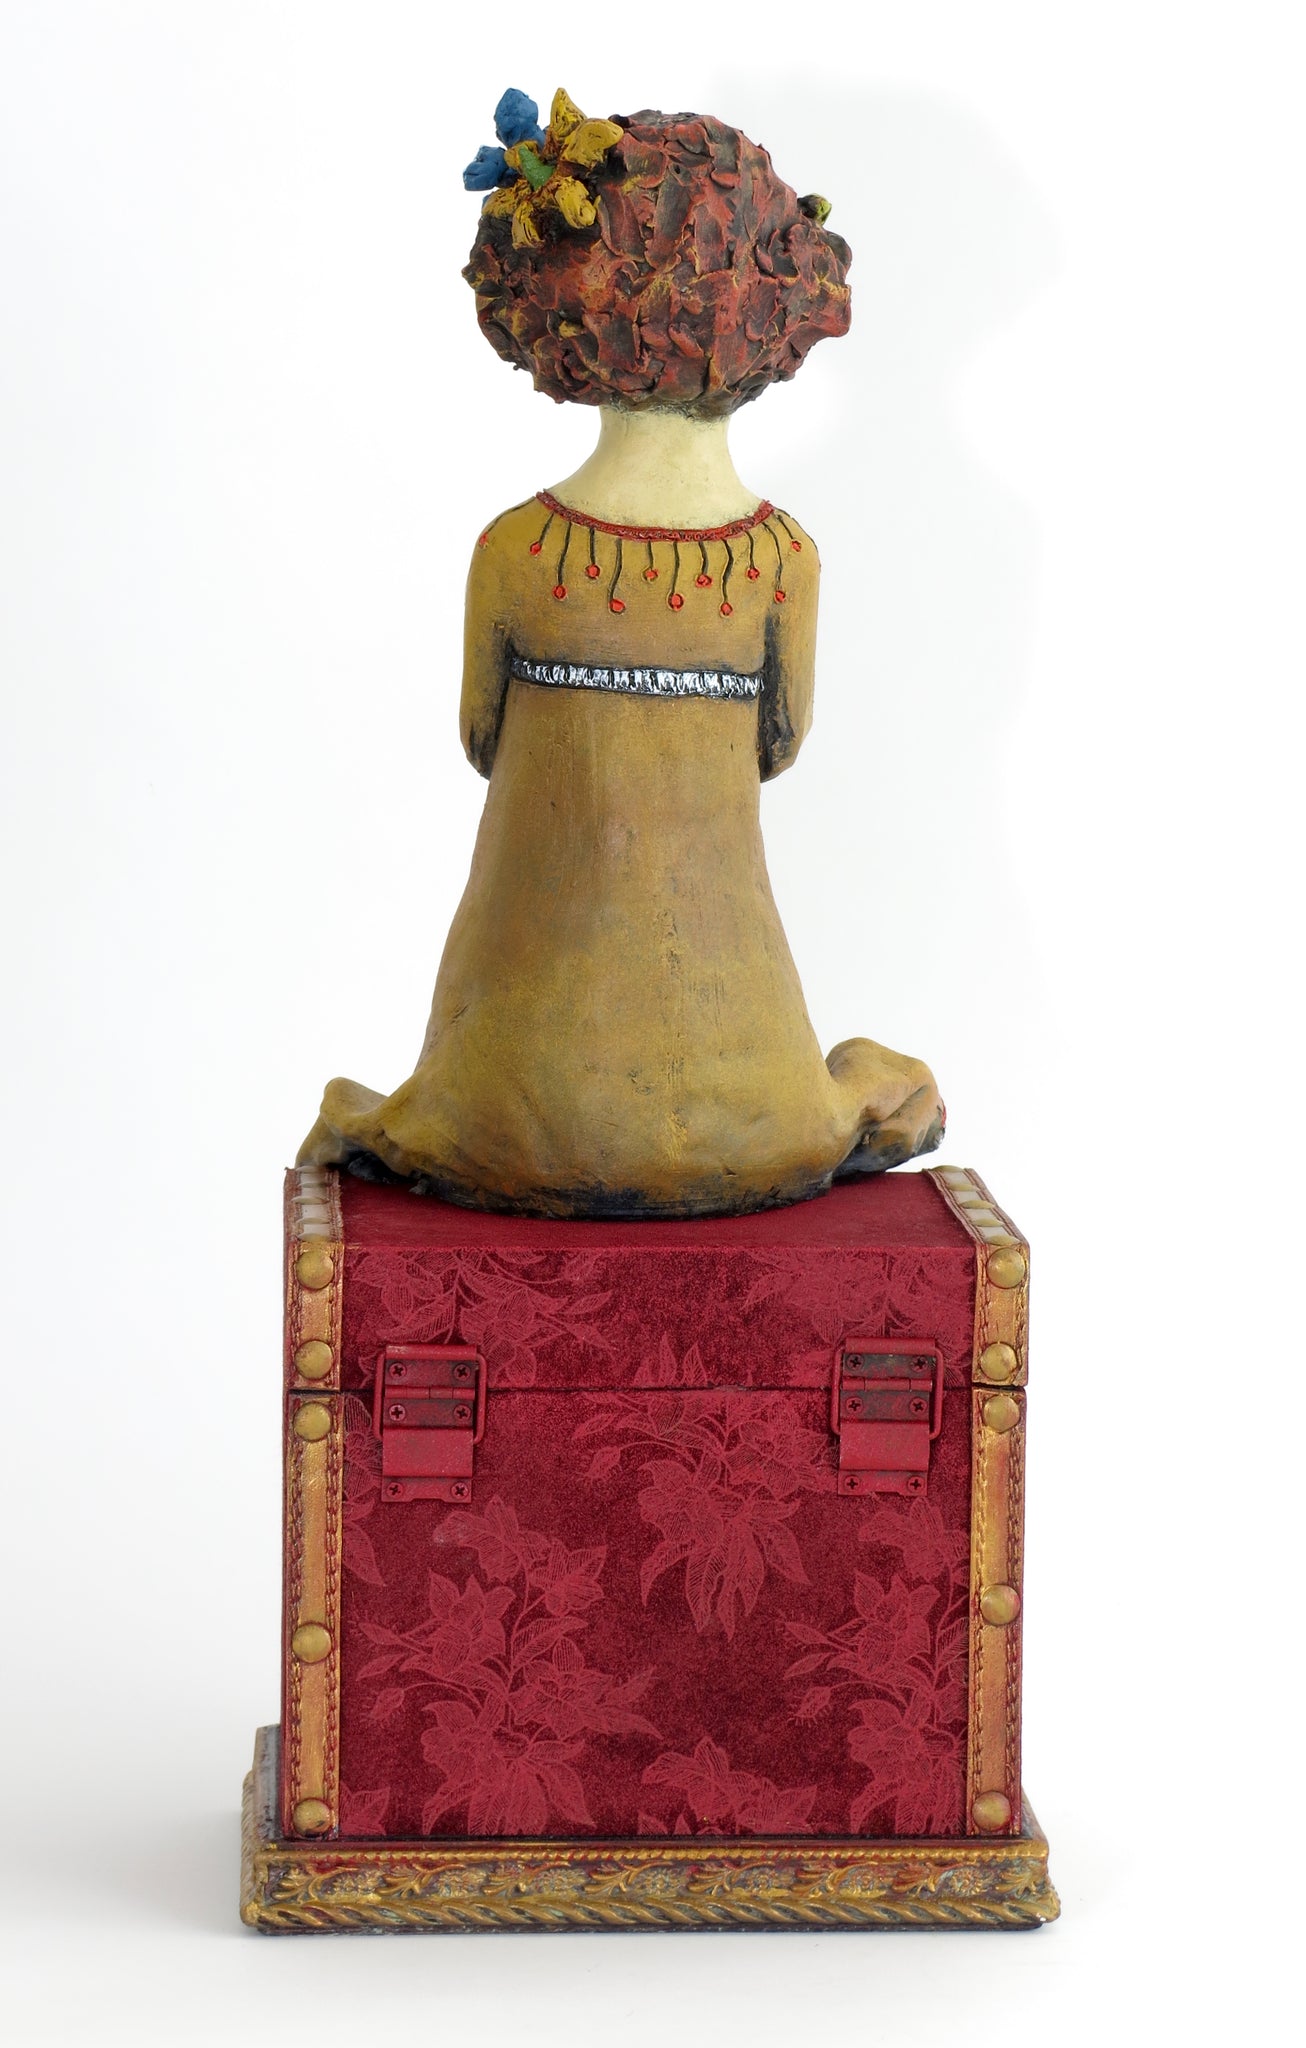 SOLD   "Precious Cargo" Original ceramic sculpture by Jacquline Hurlbert